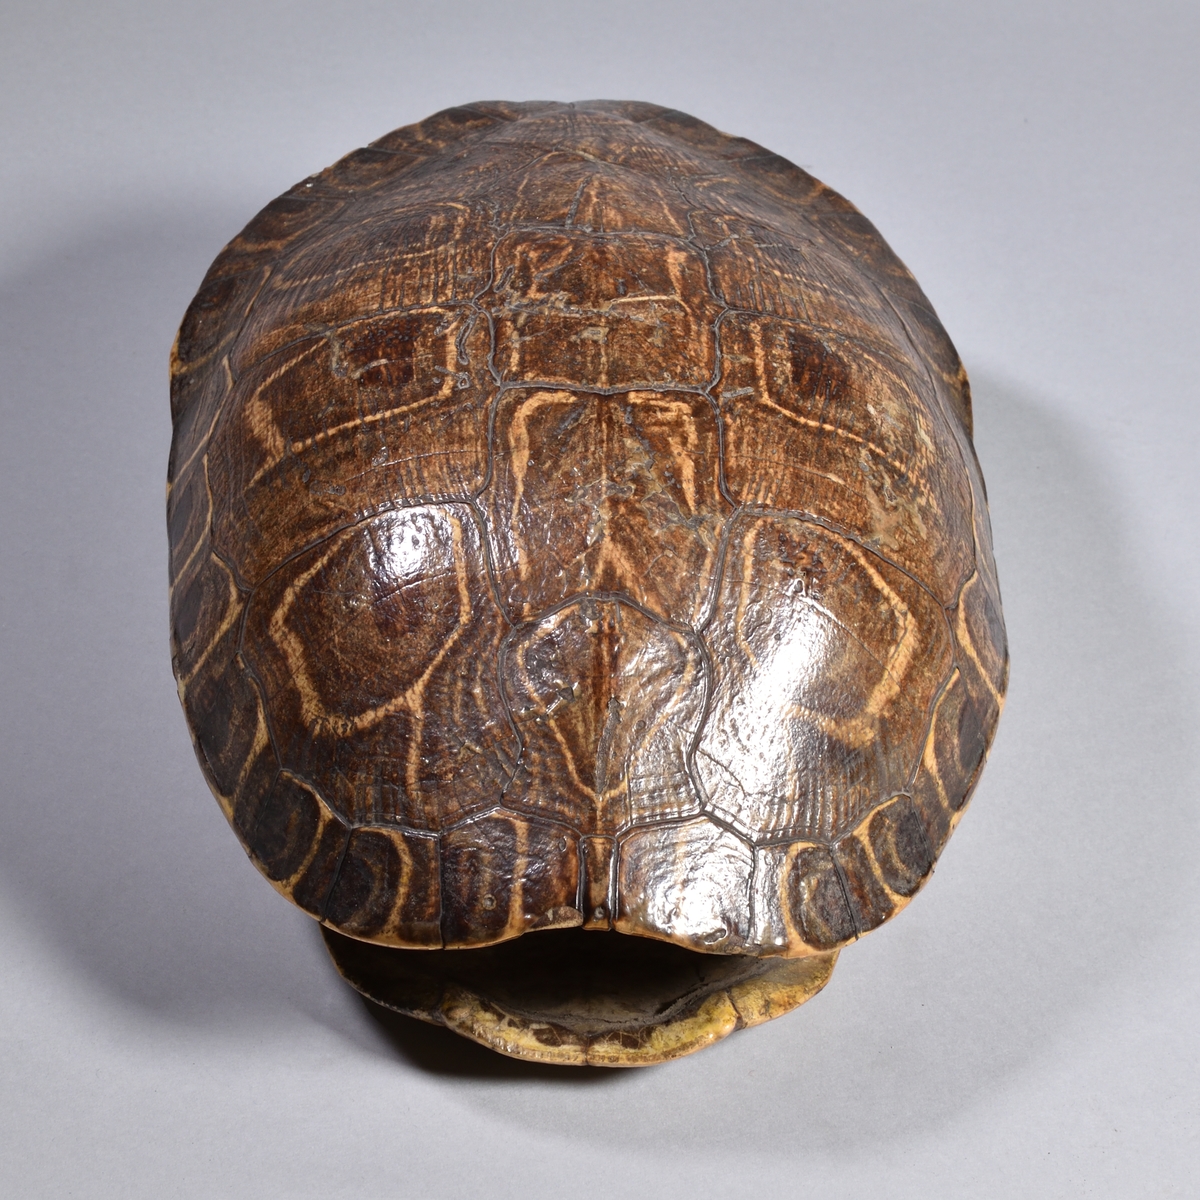 Sköldpaddsskal, med både över- och undersida, i olika bruna nyanser.